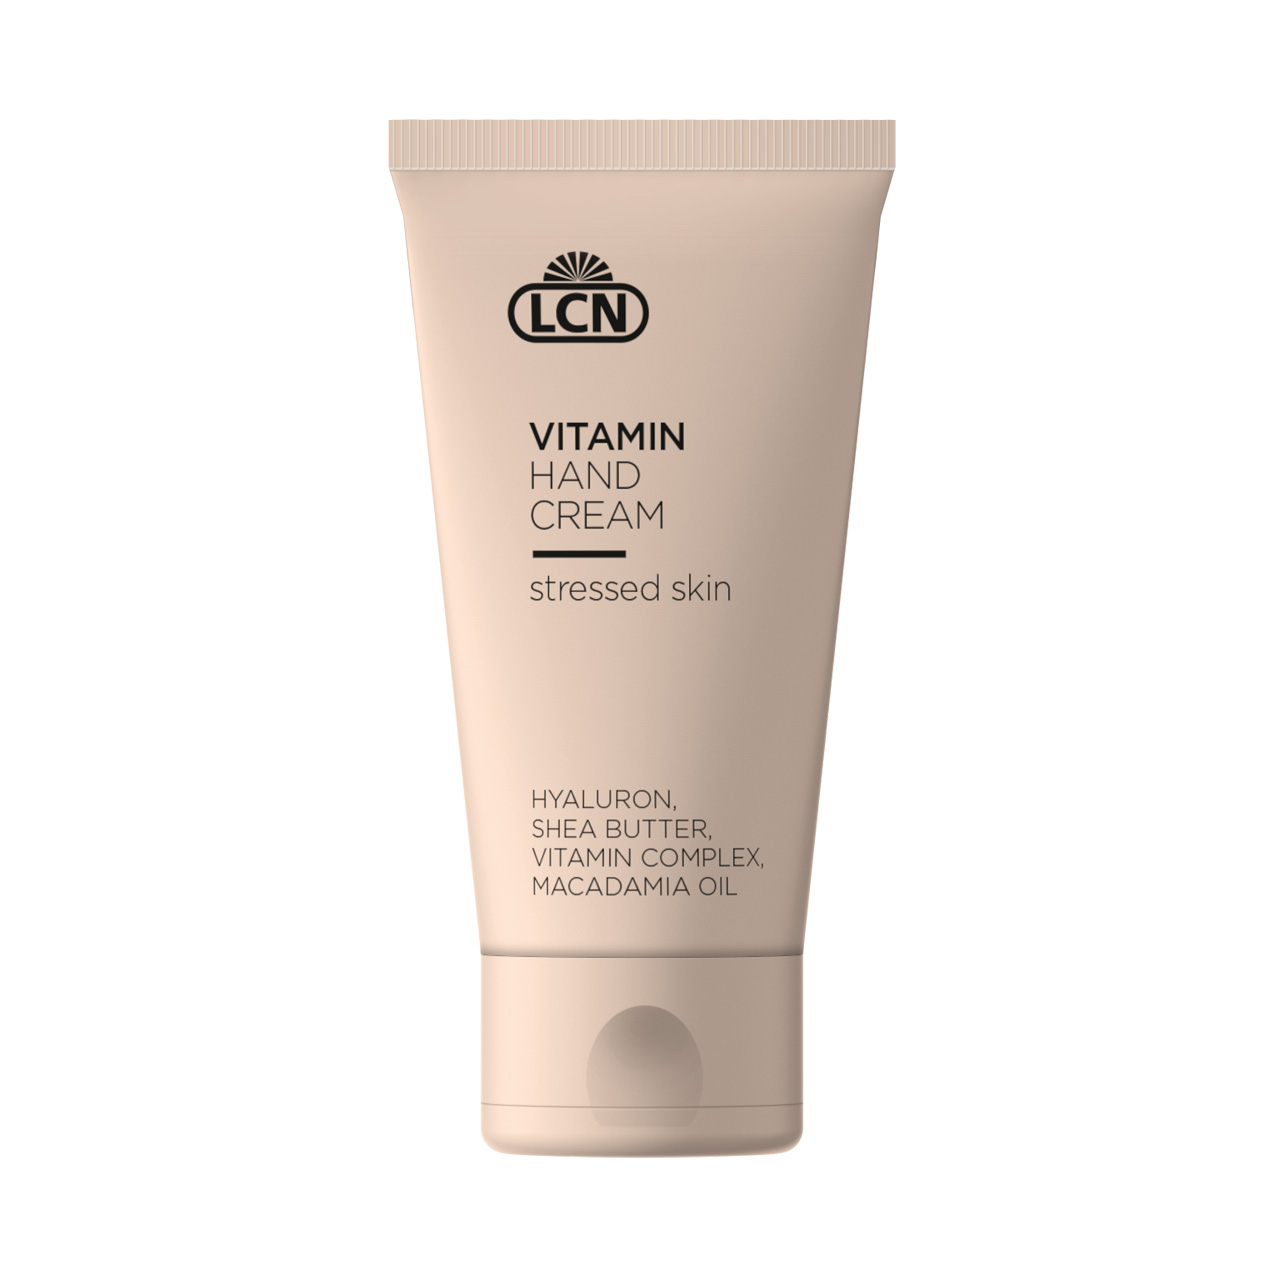 Vitamin Hand Cream, 50 ml stressed skin